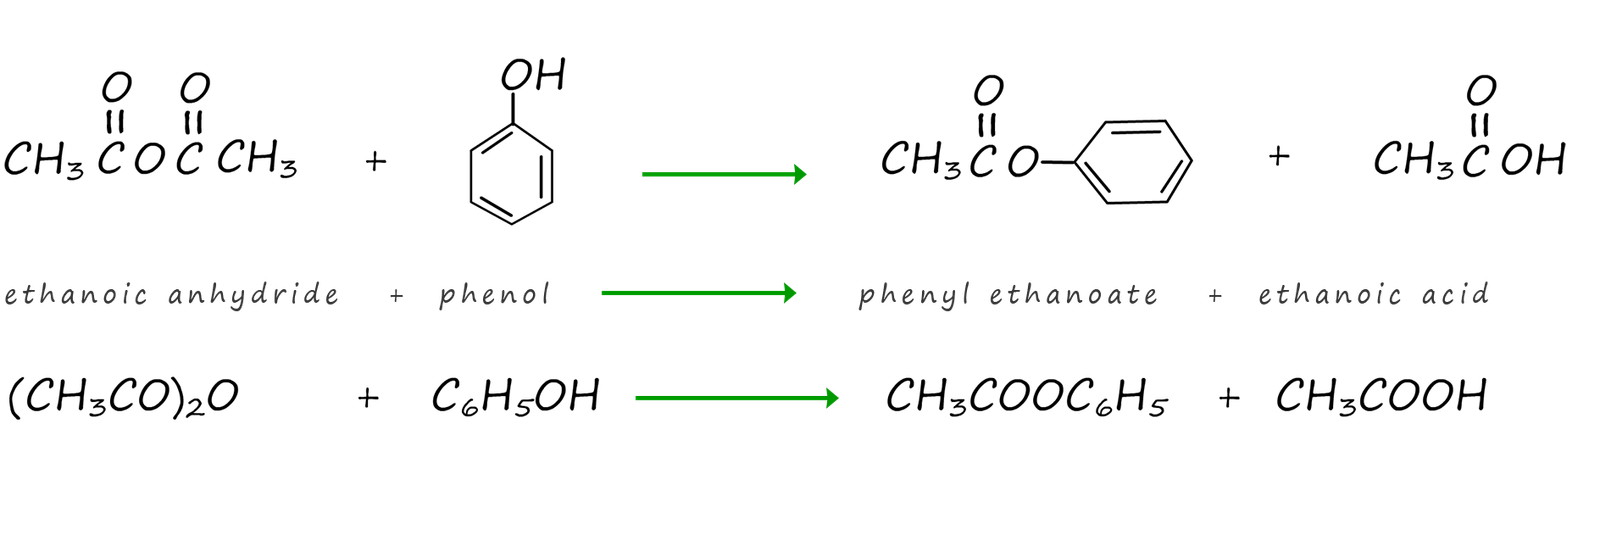 ethanoic acid and phenol reacting to make phenyl ethanoate